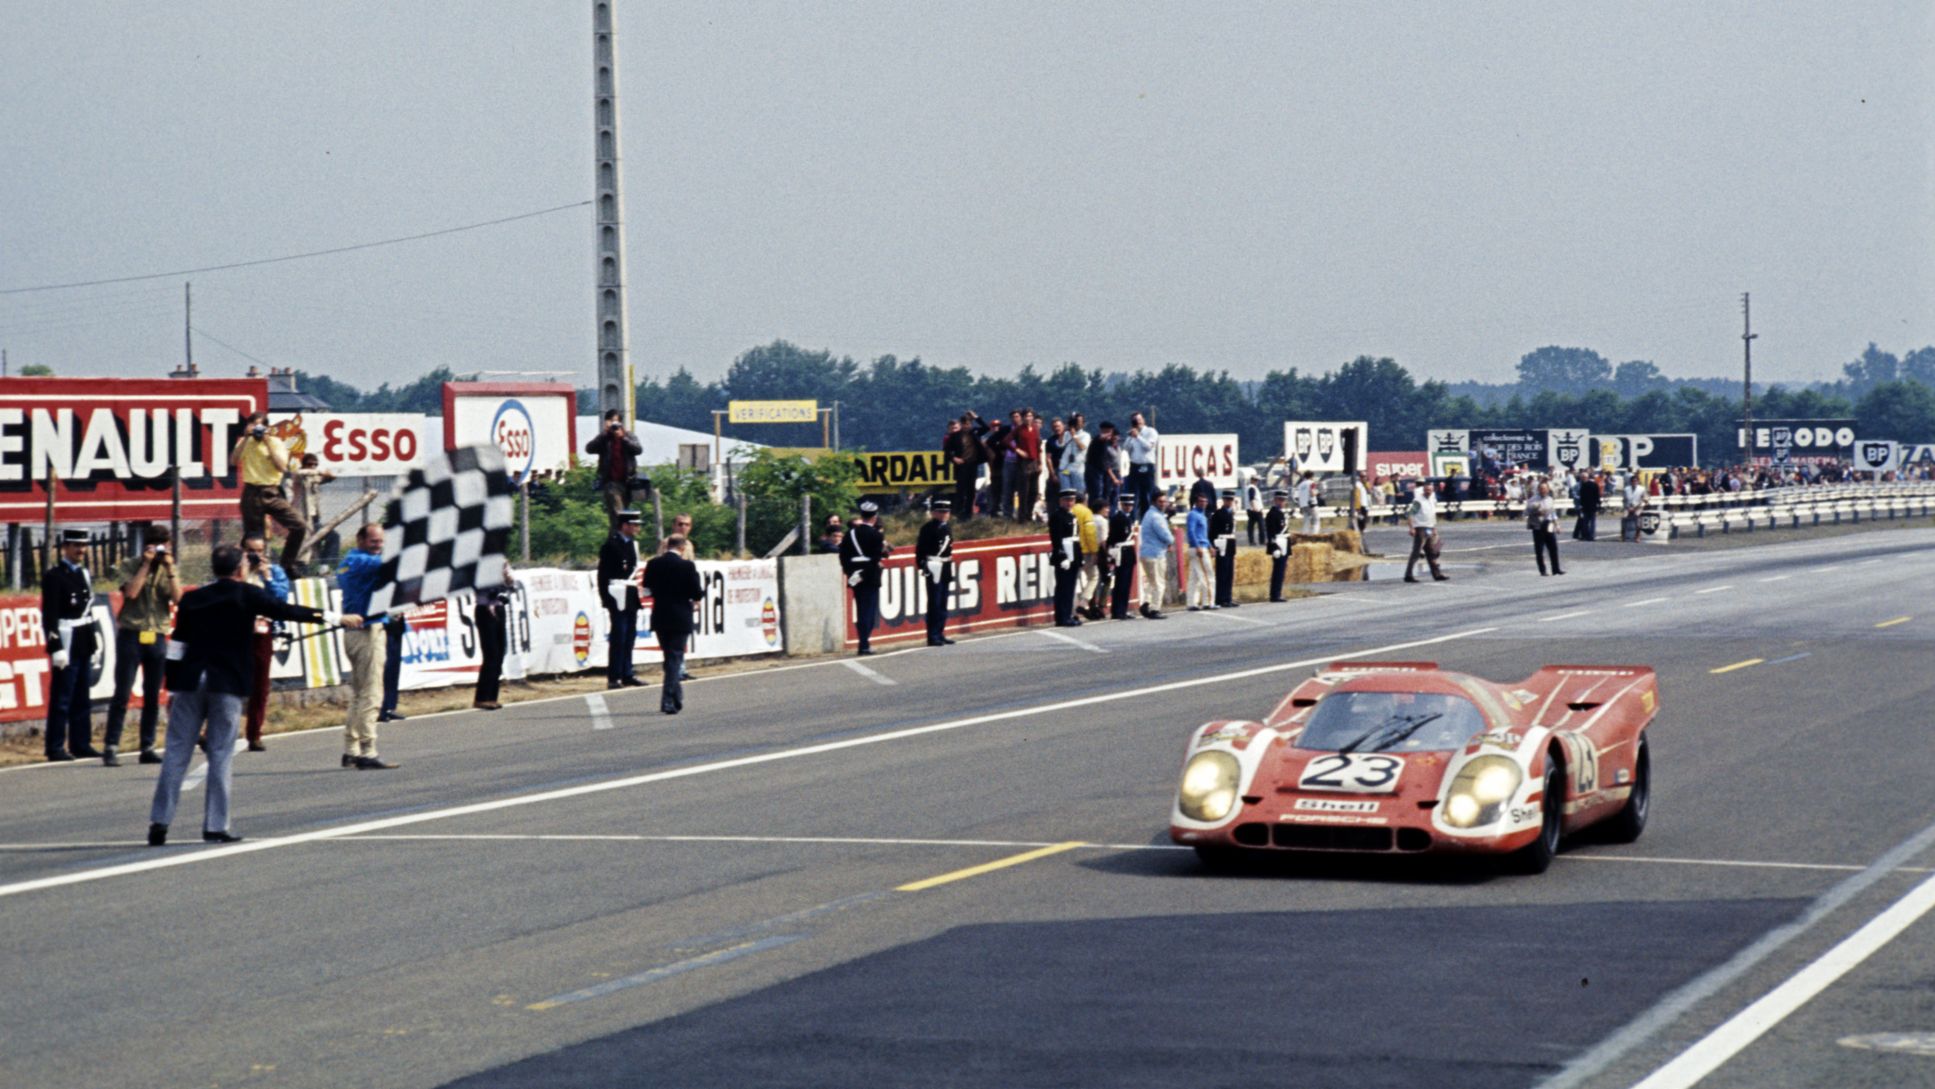 917 KH, 24 Stunden von Le Mans, 1970, Porsche AG